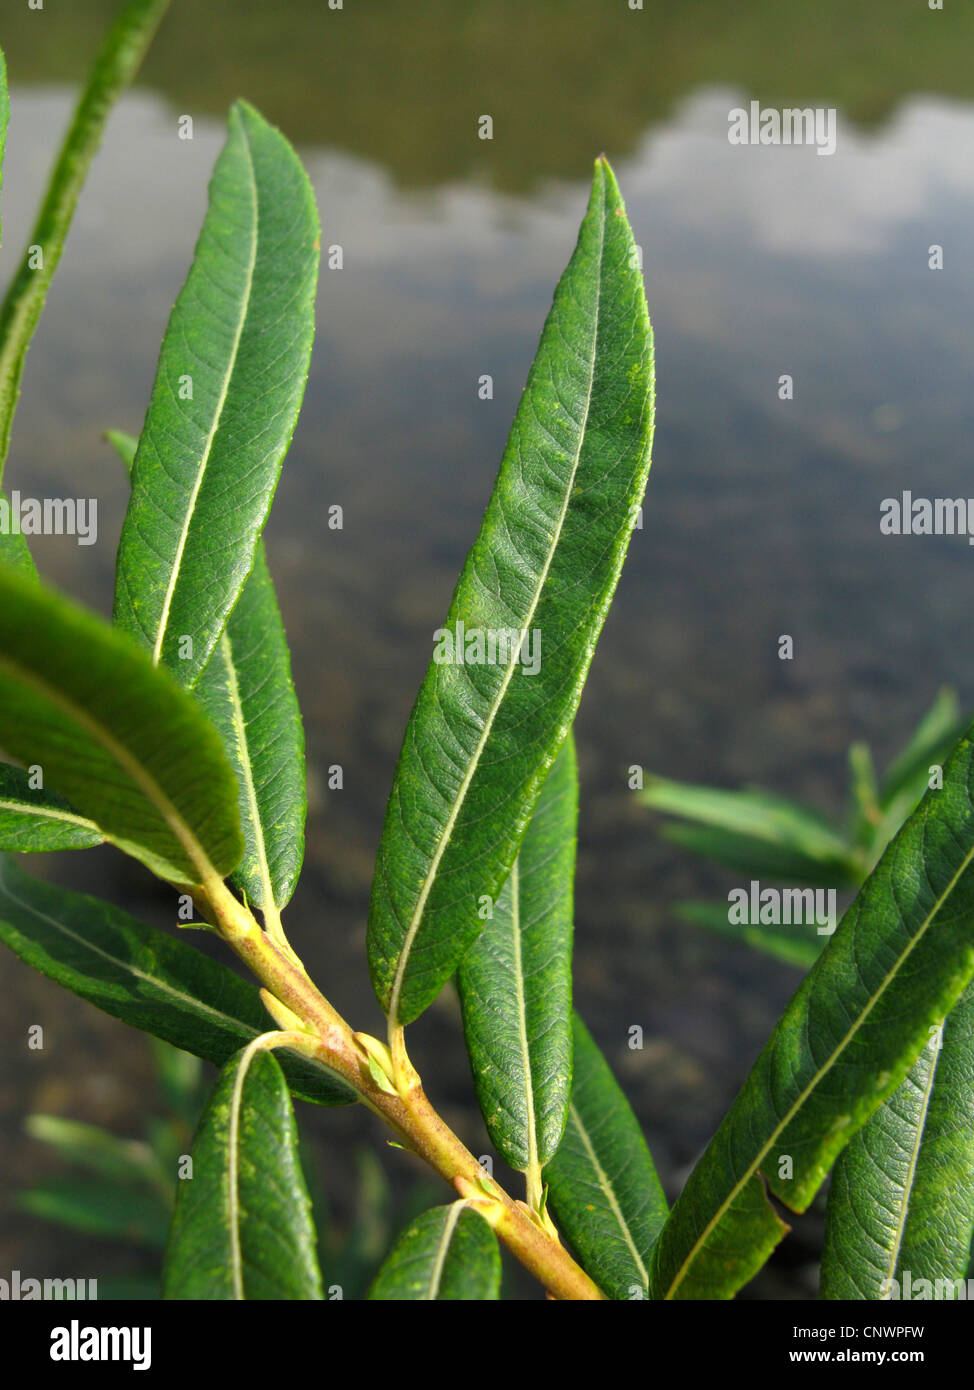 Salix x rubra (Salix x rubra, Salix purpurea x viminalis), leaves, Germany, Rhineland-Palatinate Stock Photo